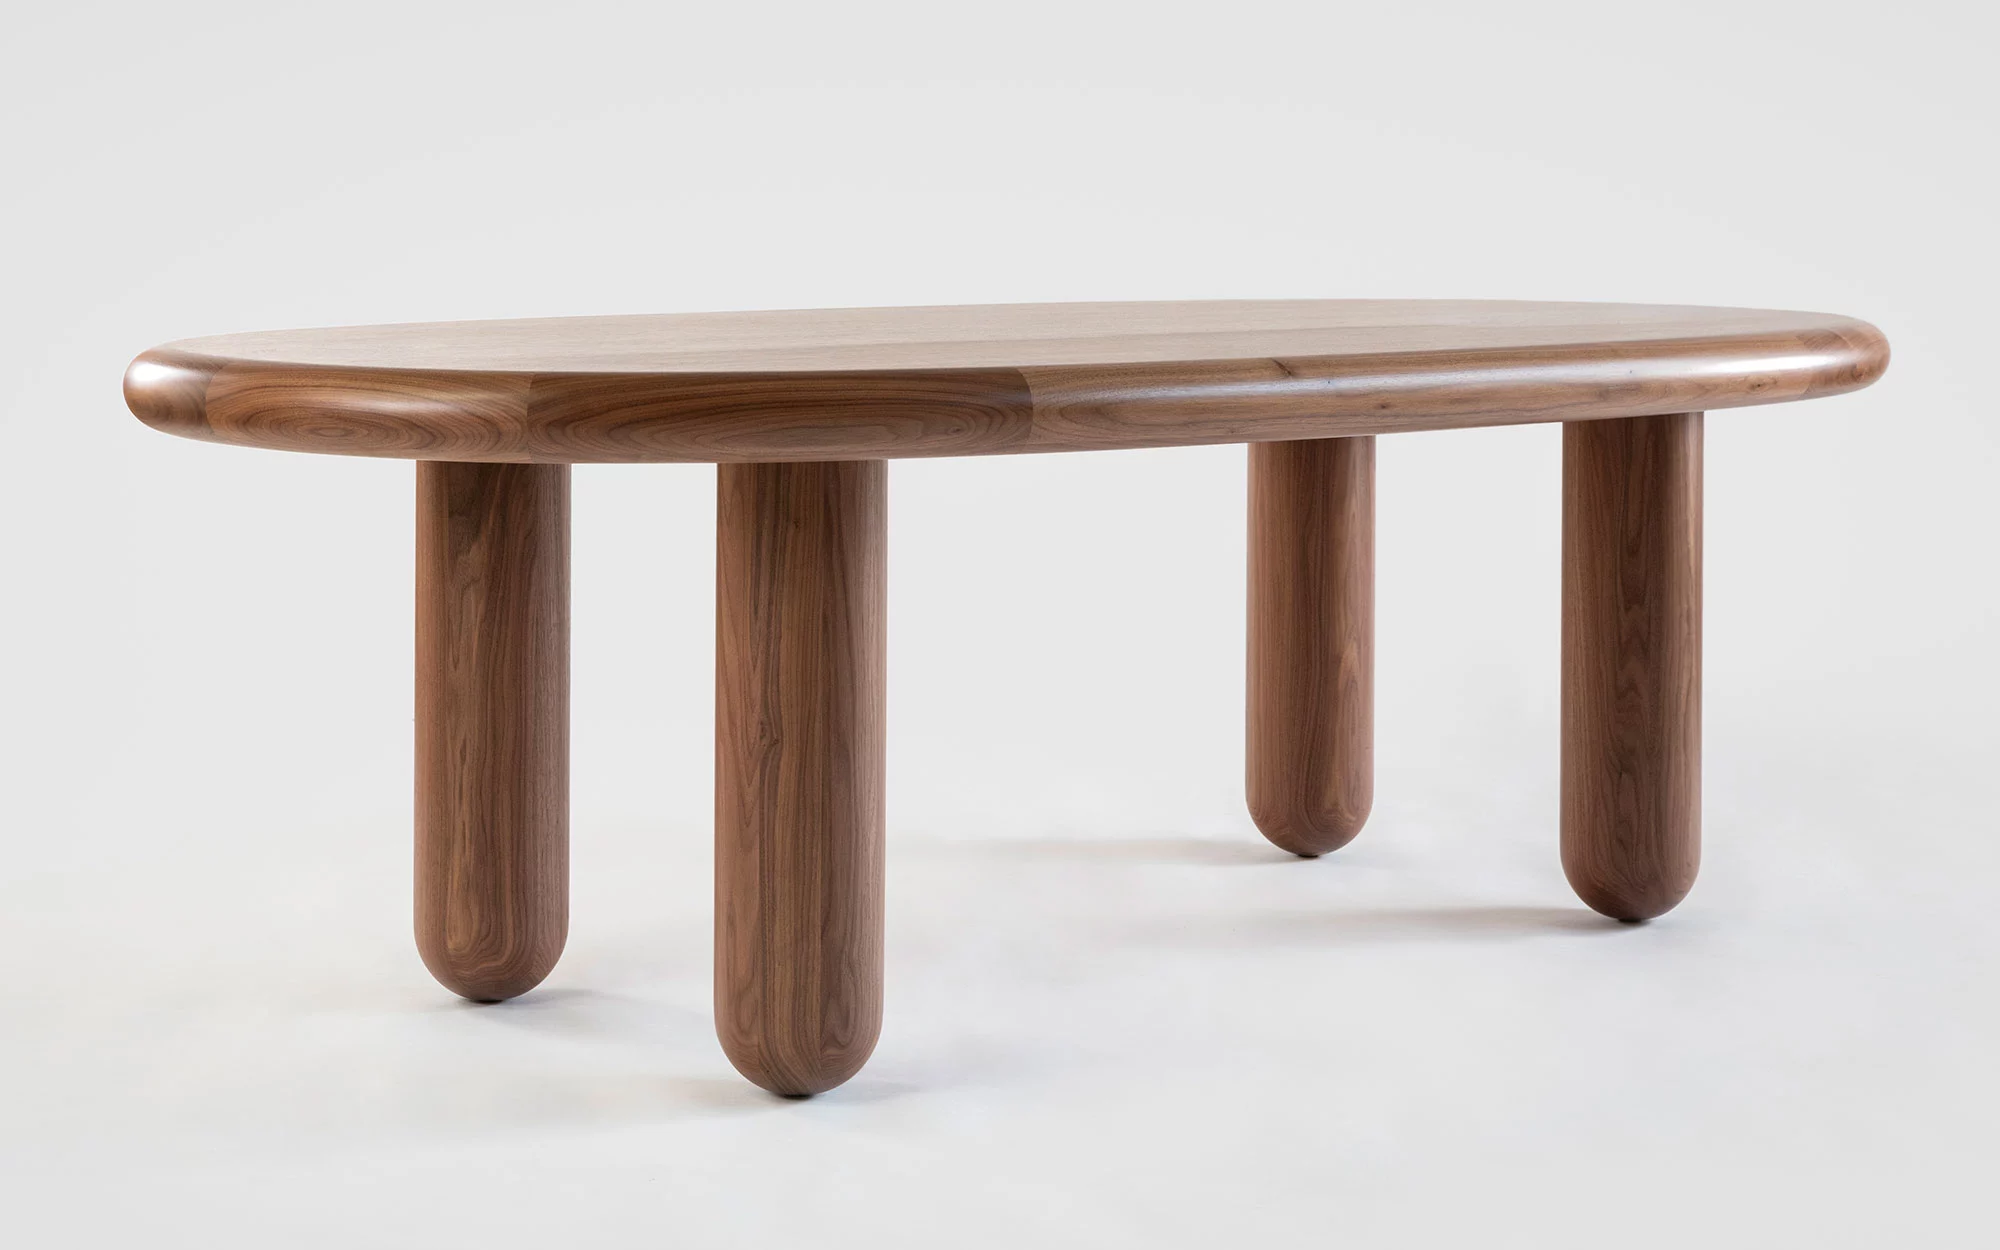 Organism oval table - Jaime Hayon - Coffee table - Galerie kreo